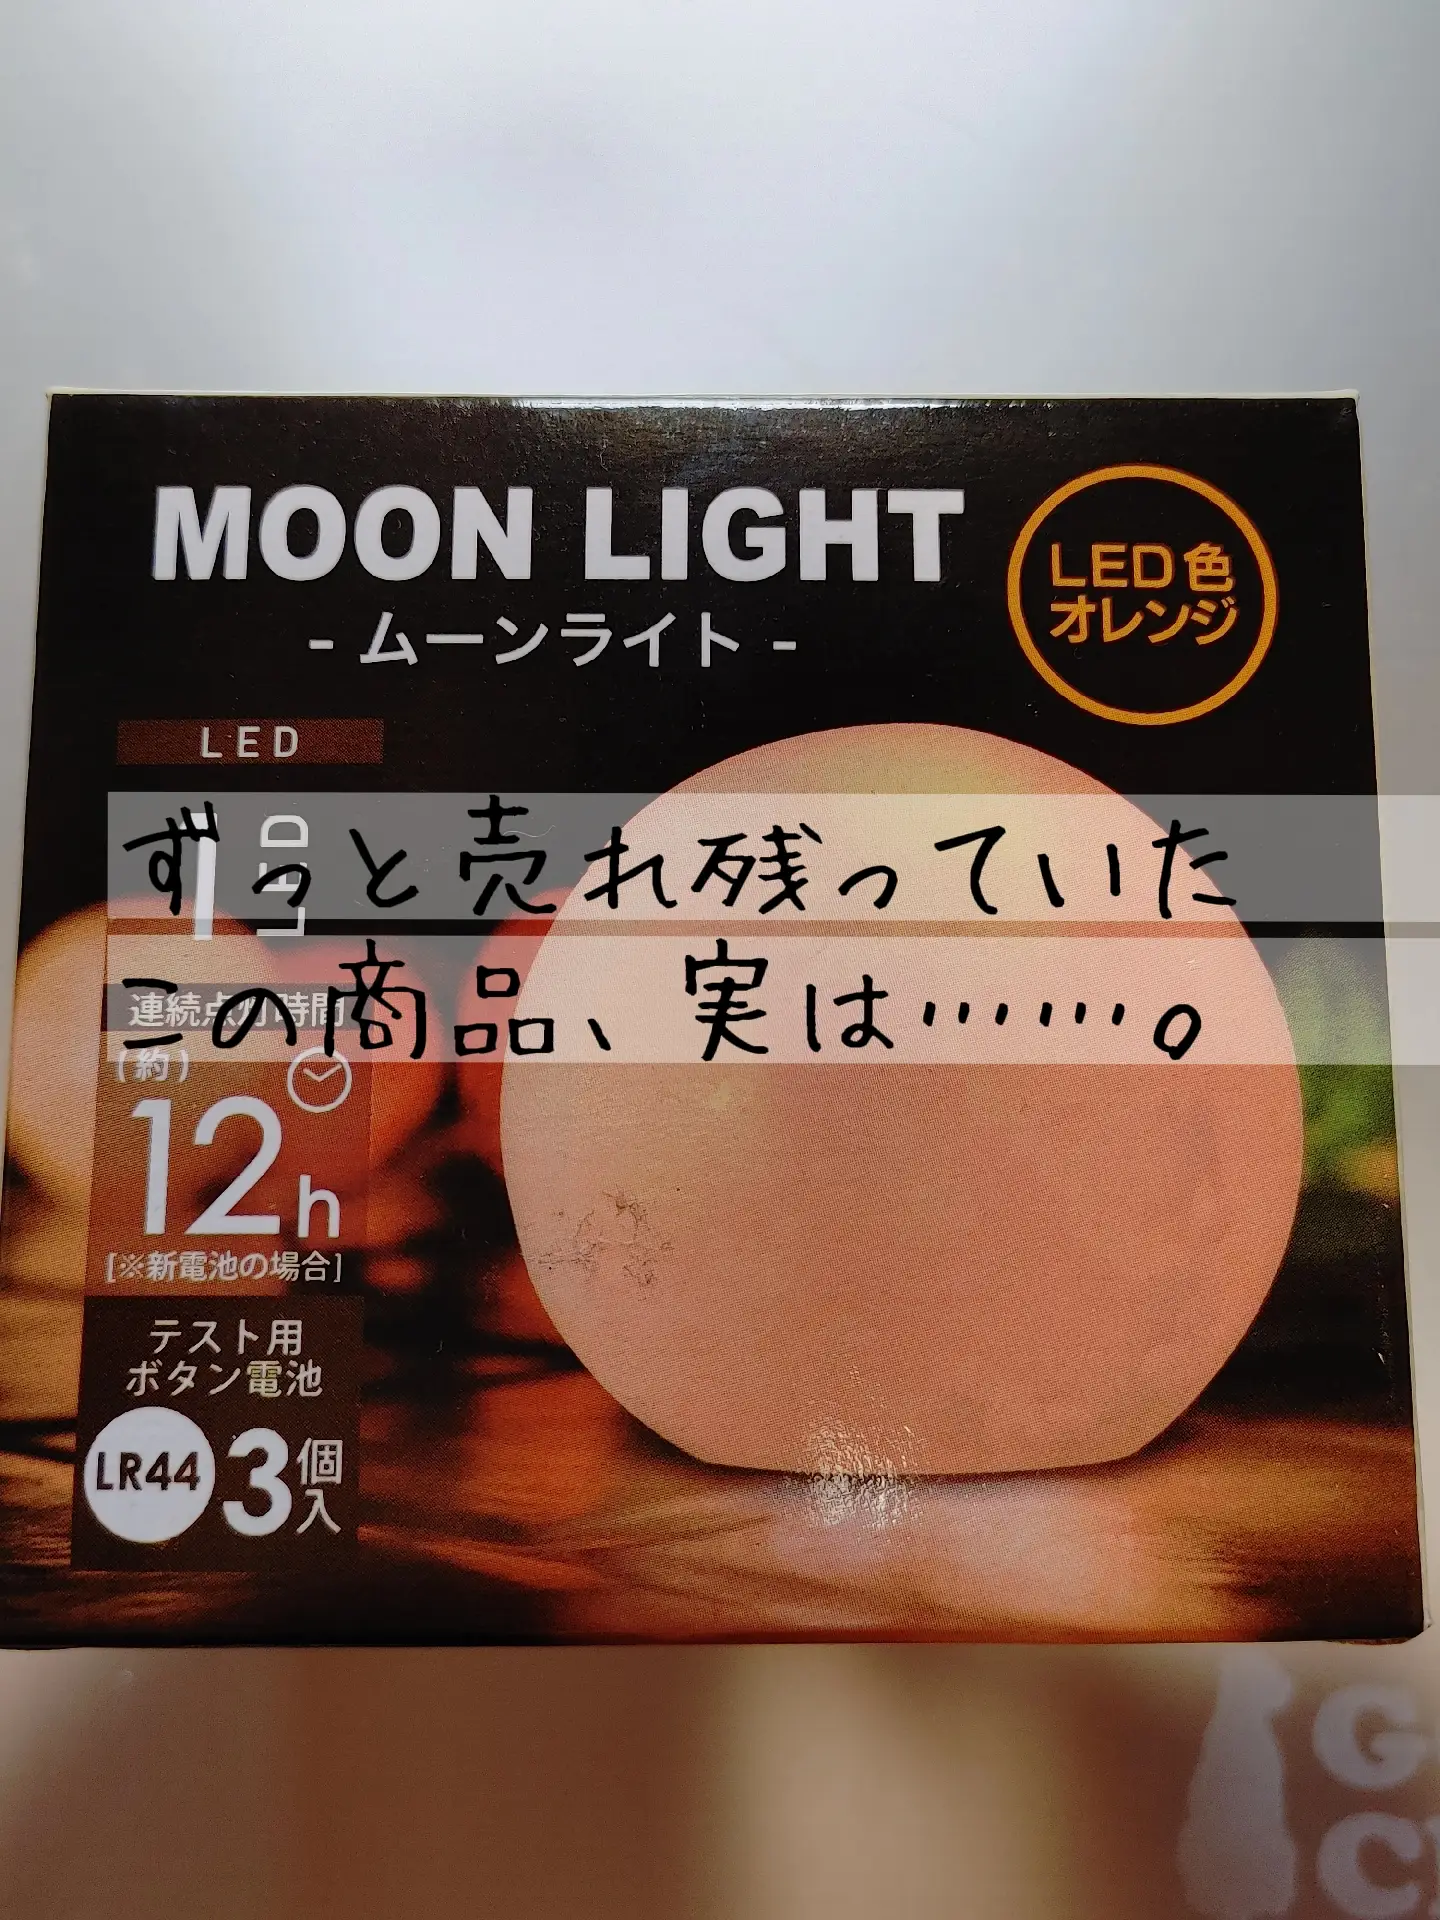 日本製 セリア ライト インテリアライト オレンジ色 ムーンライト